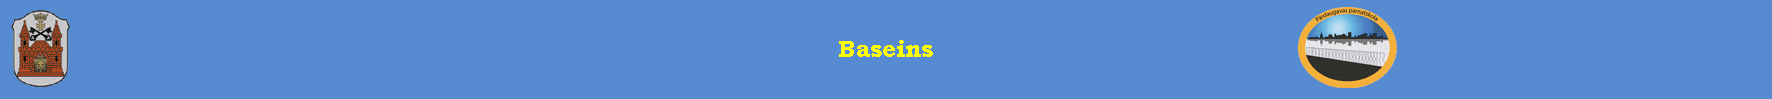 Baseins